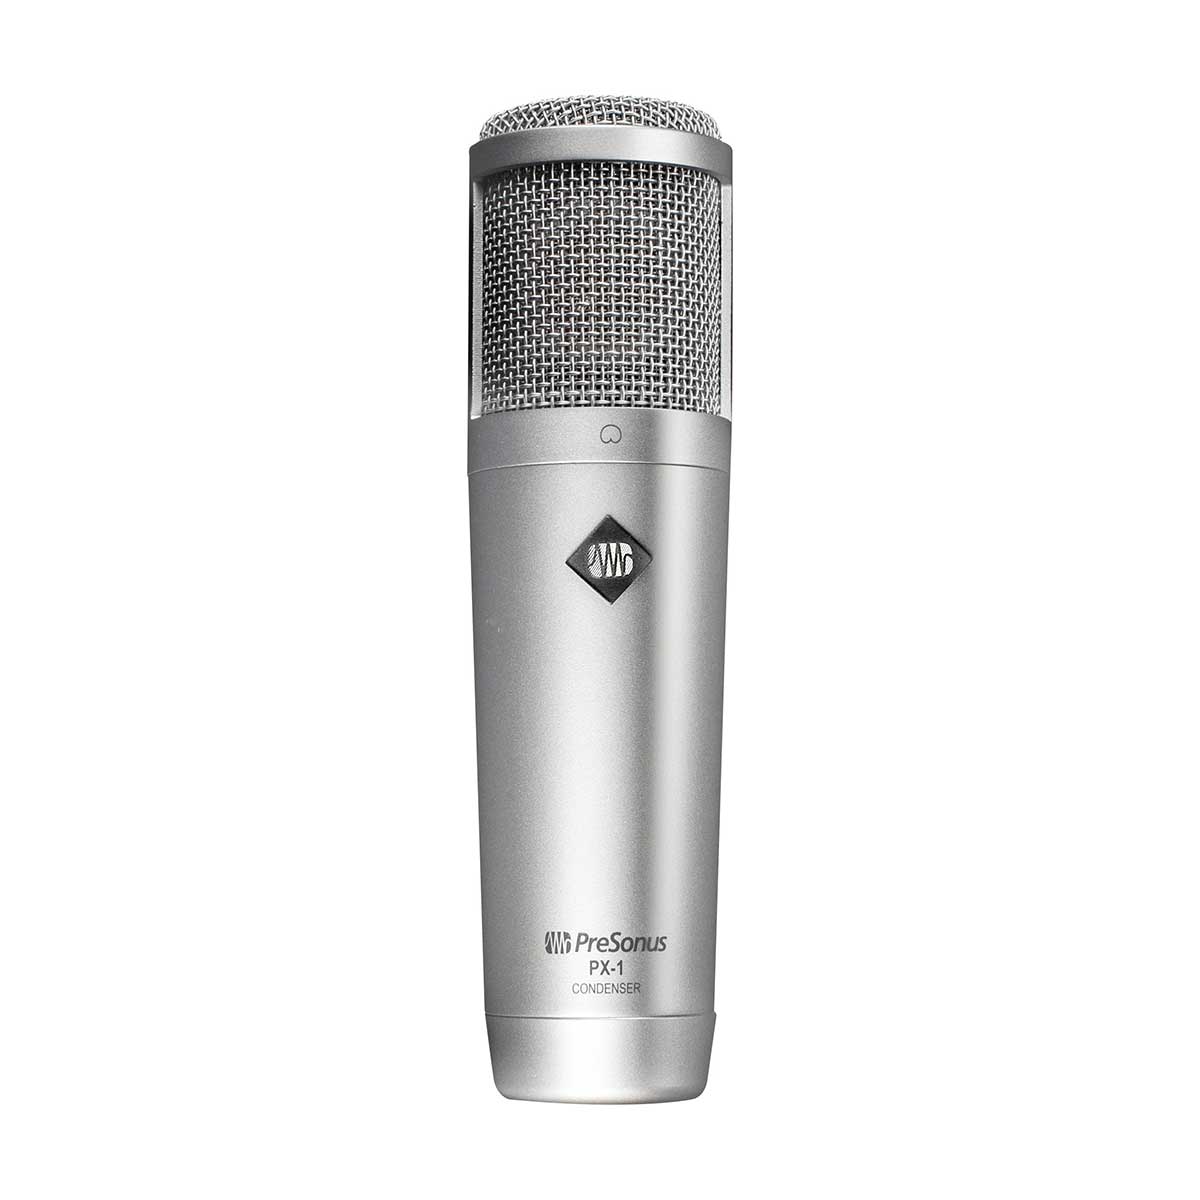 PreSonus PX-1 Large-diaphragm condenser microphone